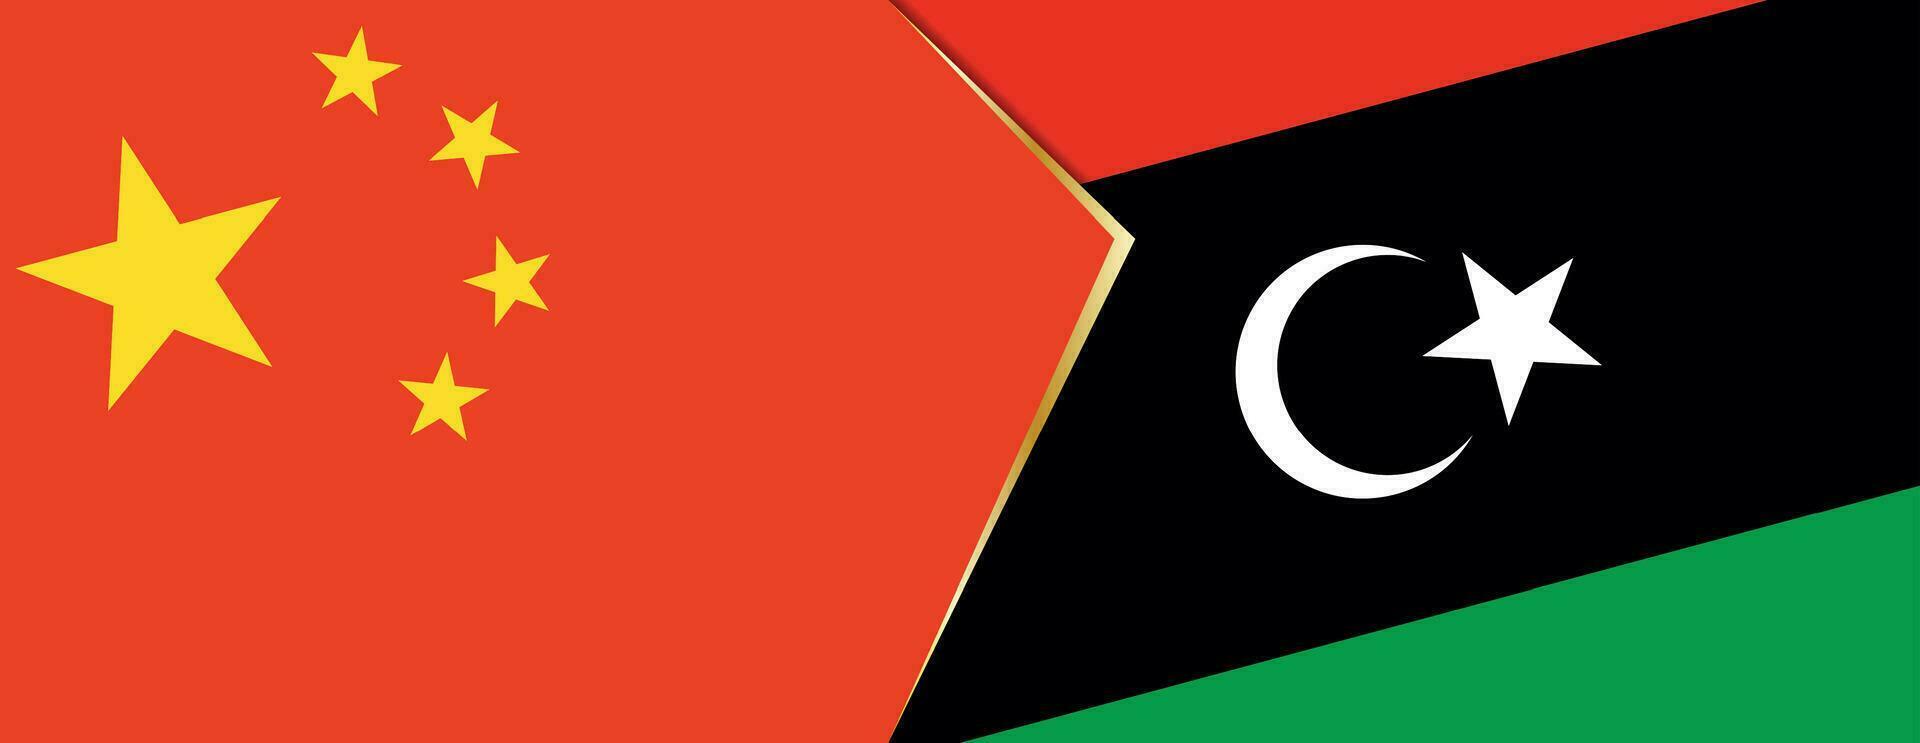 Chine et Libye drapeaux, deux vecteur drapeaux.